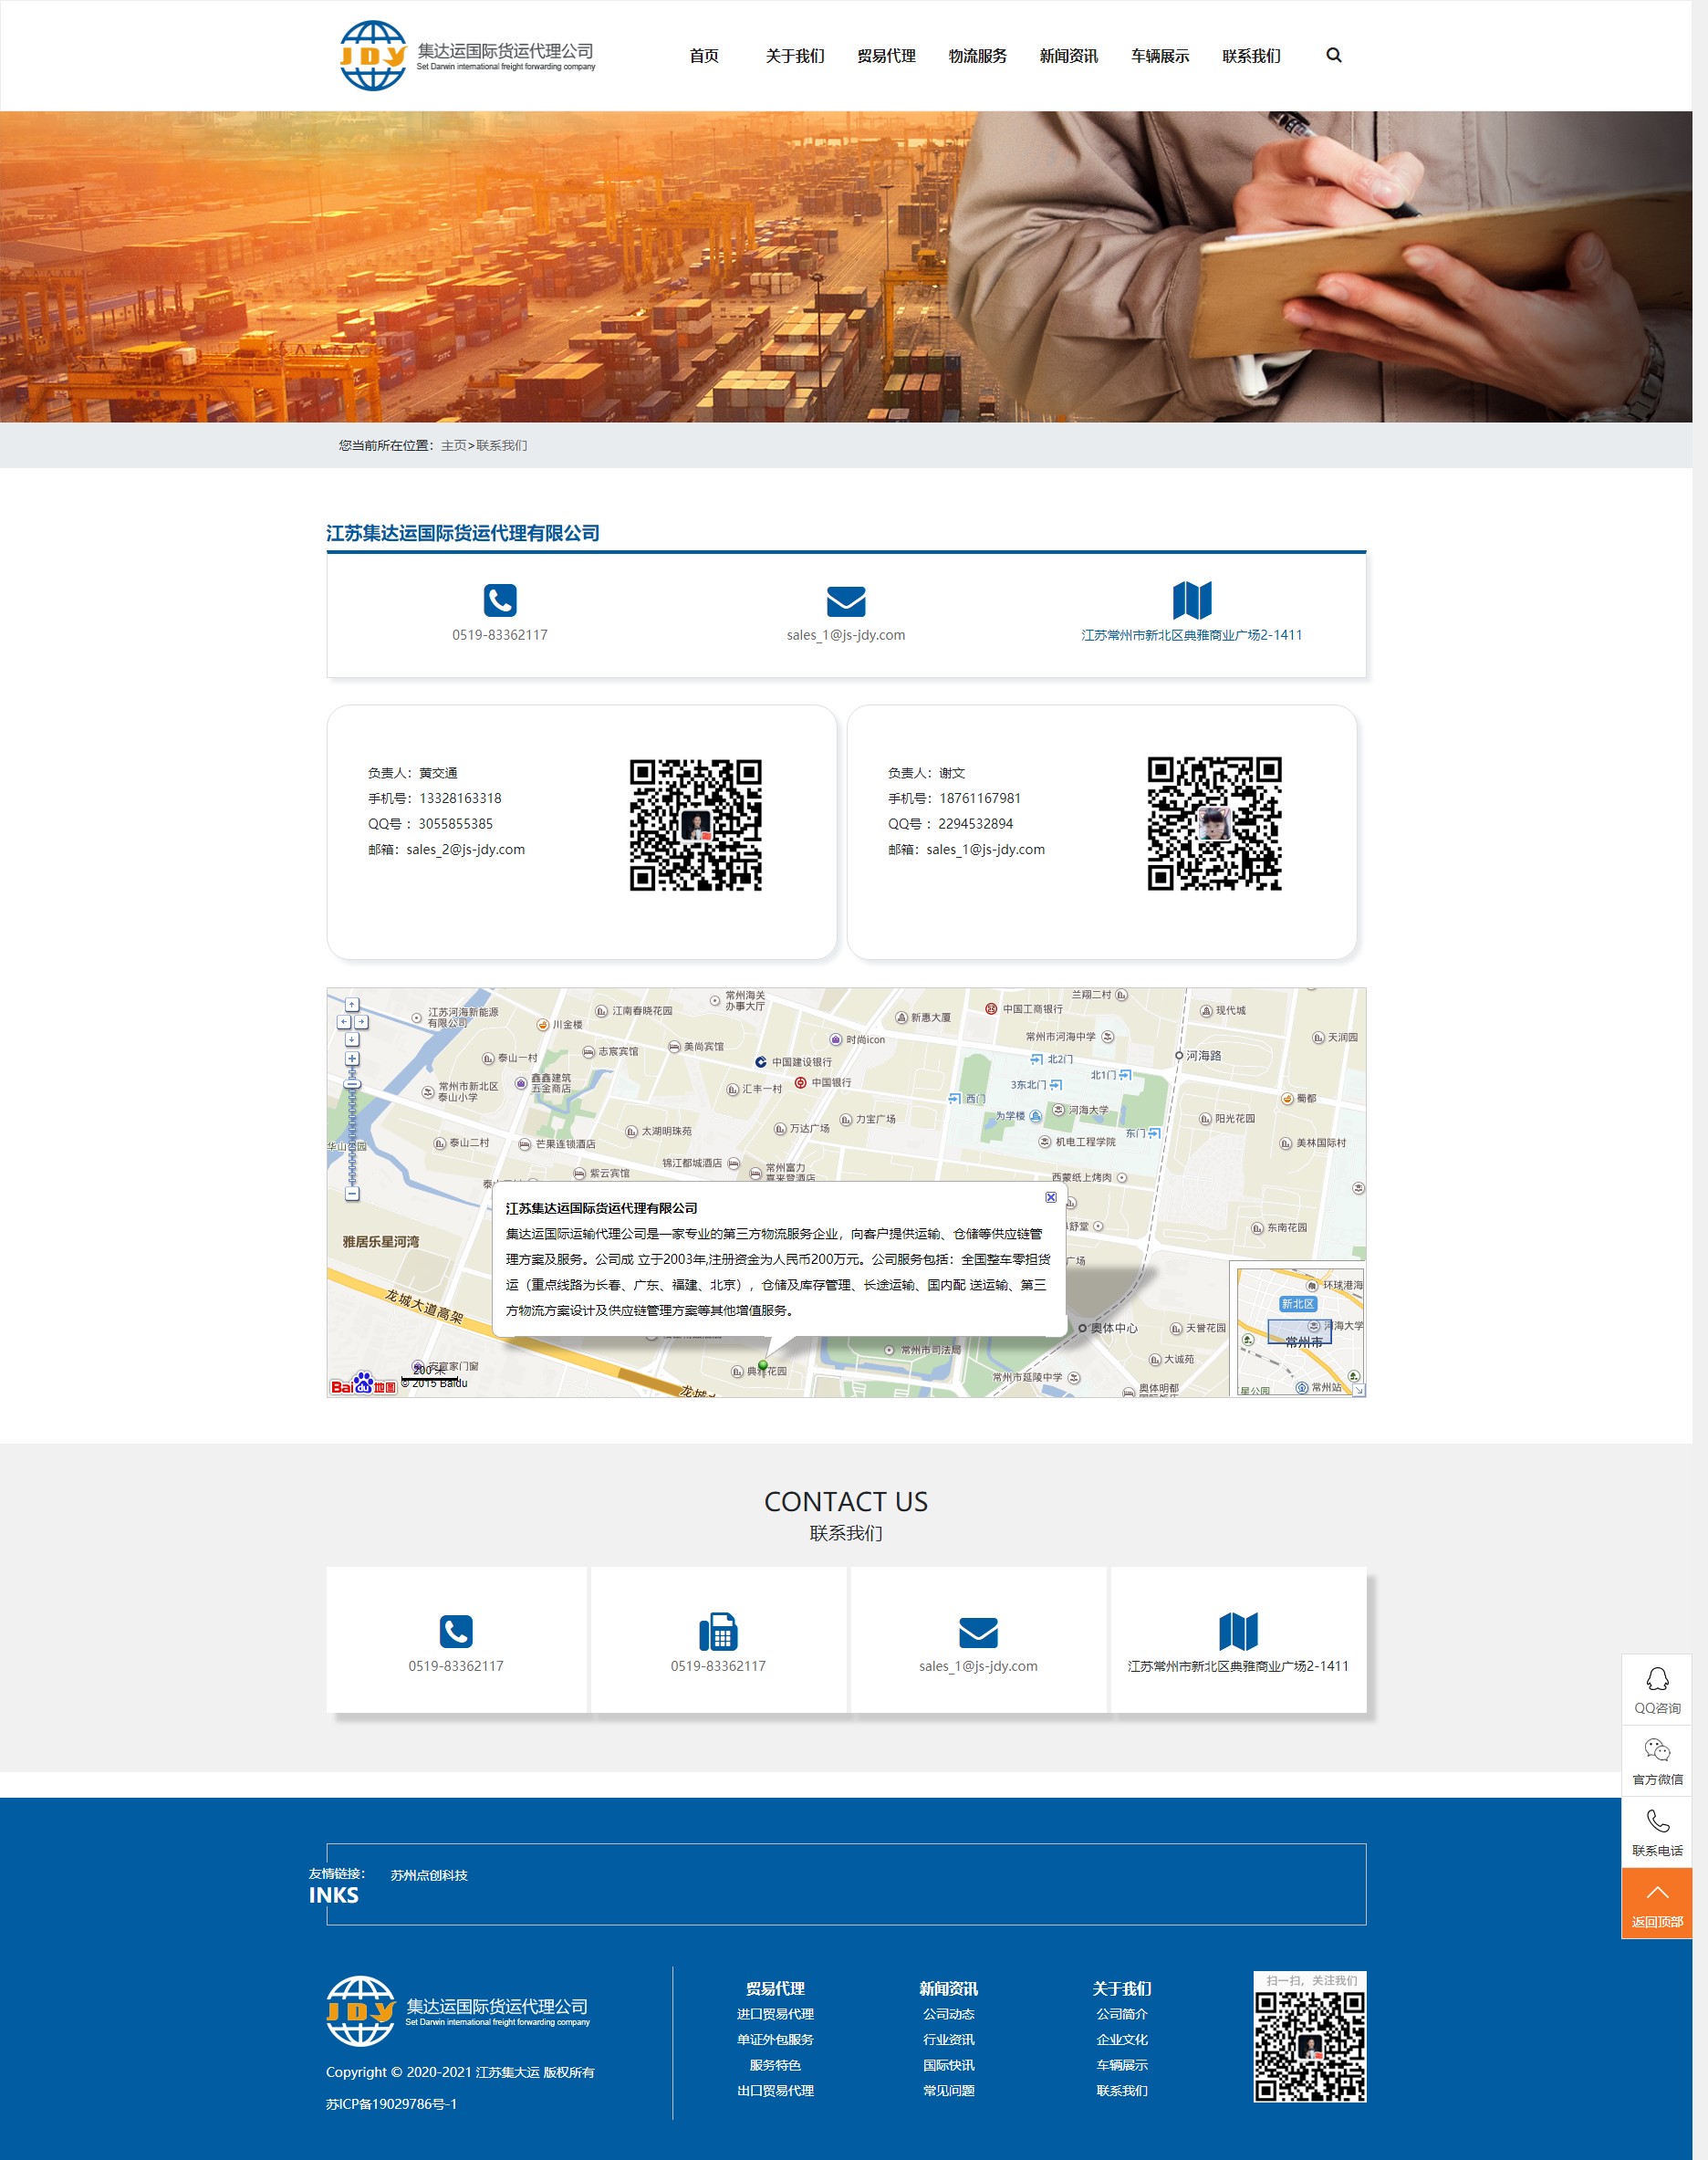 苏州网站建设公点创科技司为集大运设计的联系我们页面